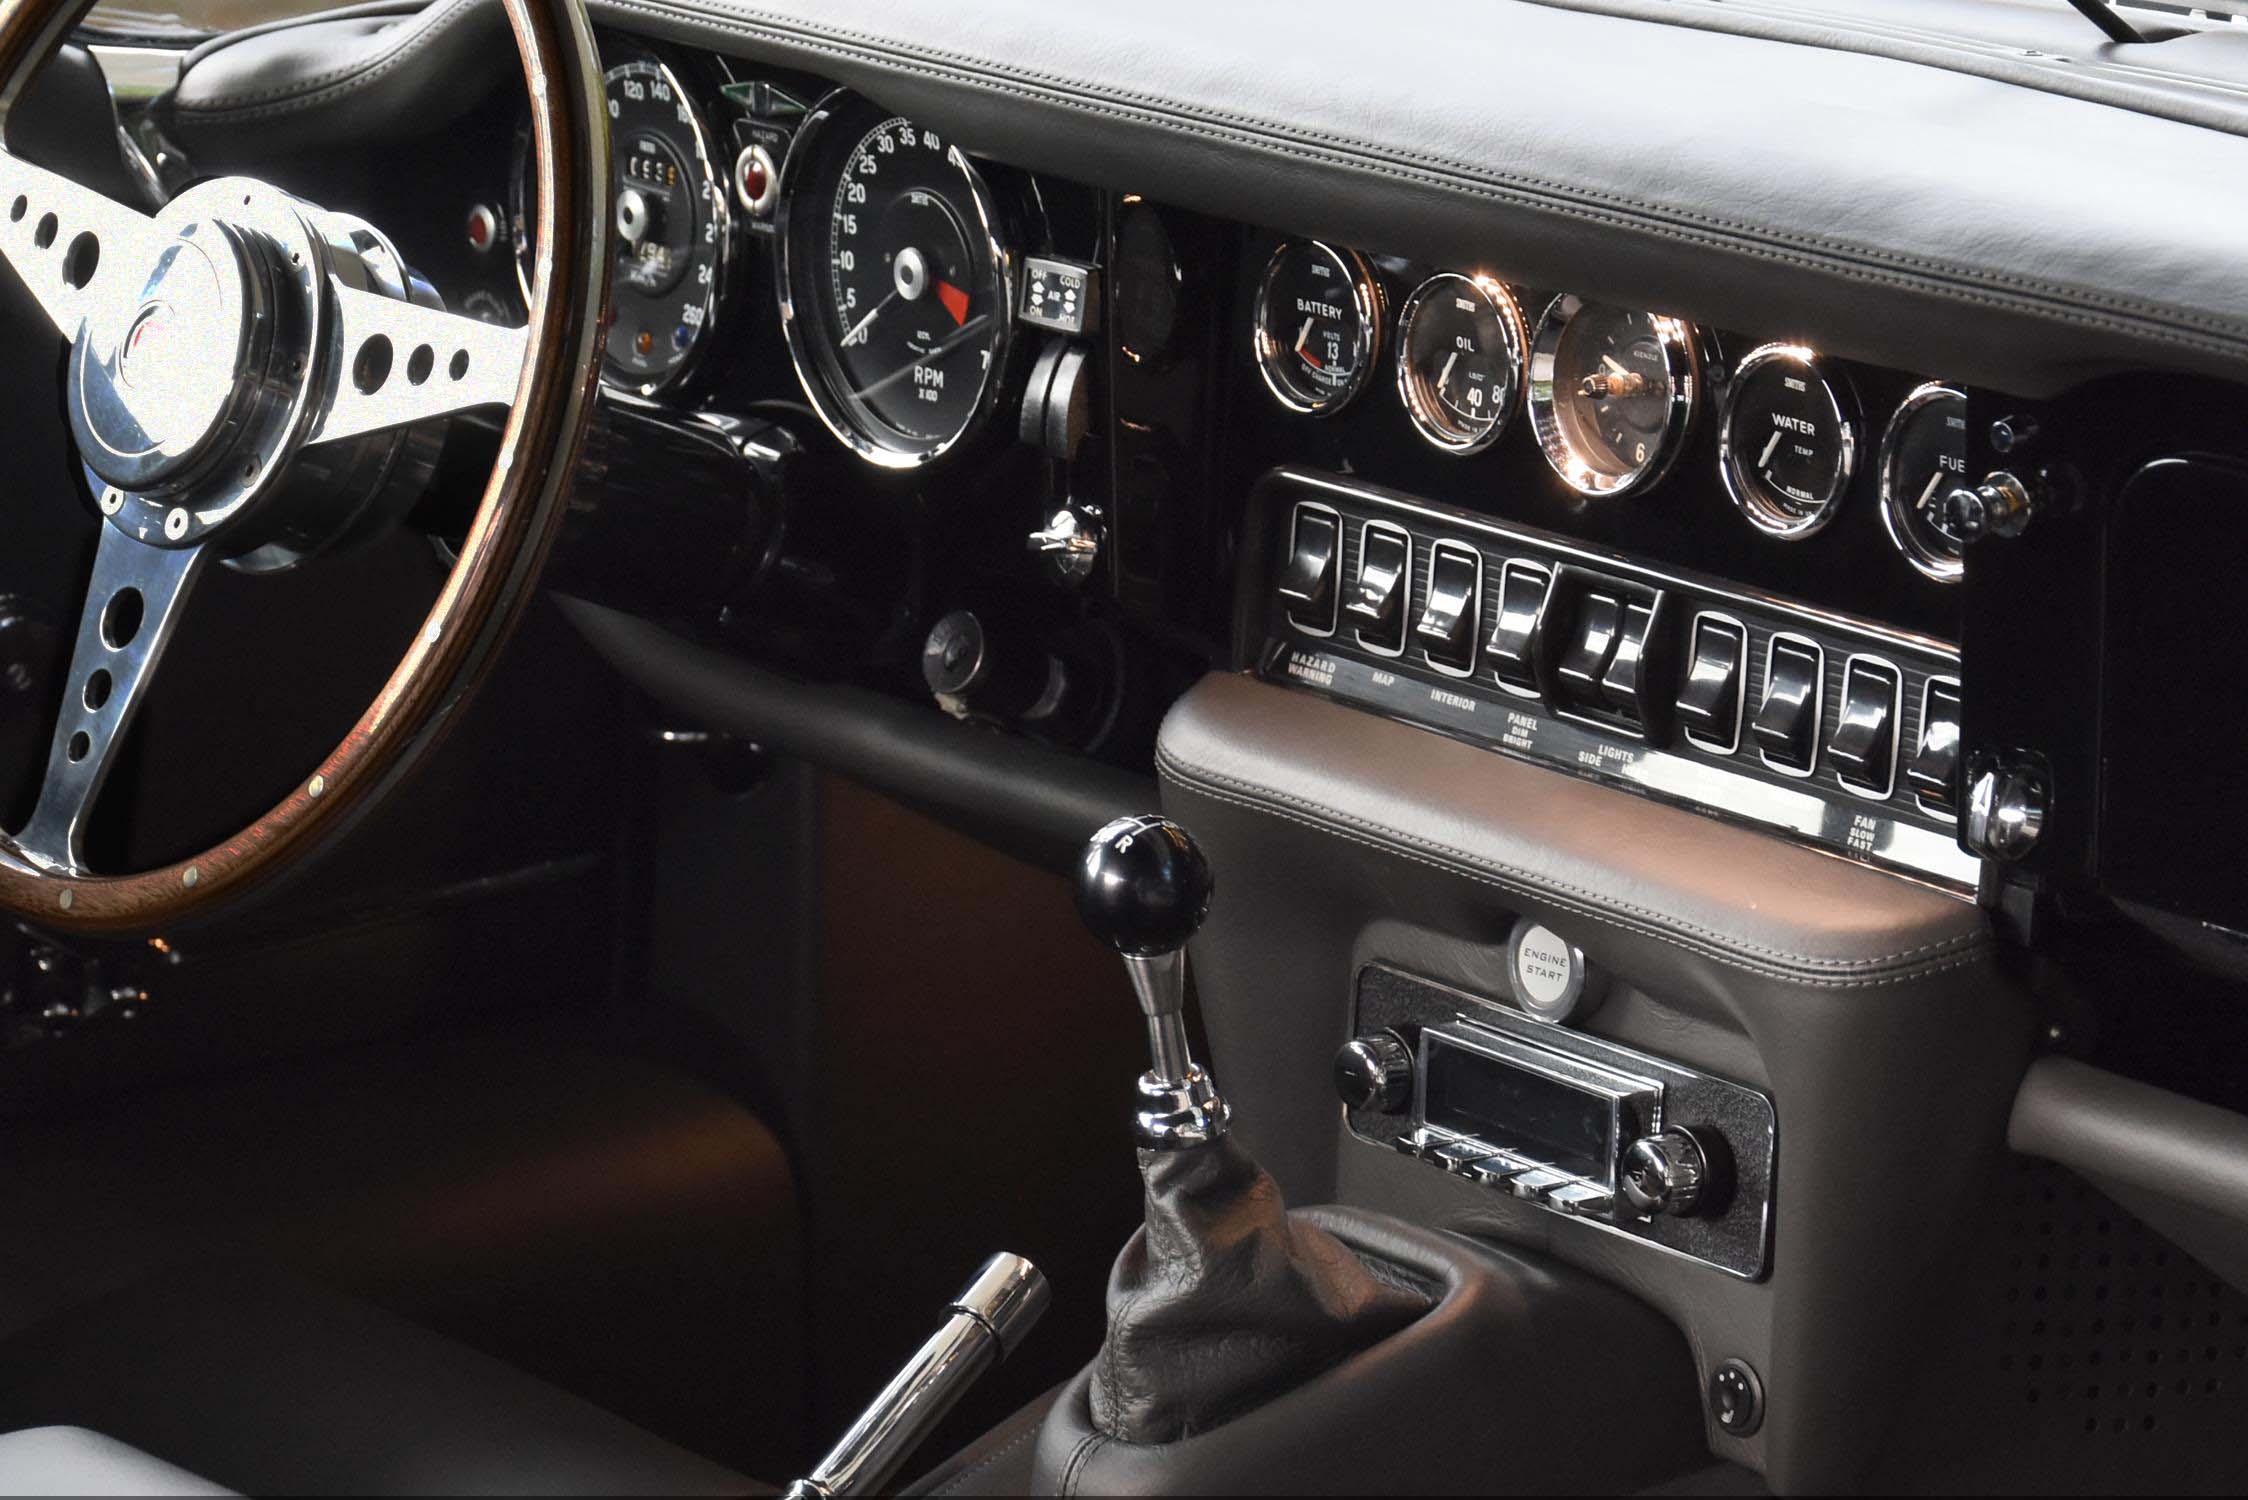 E-Type-UK-1974-Jaguar-E-Type steering wheel.jpg